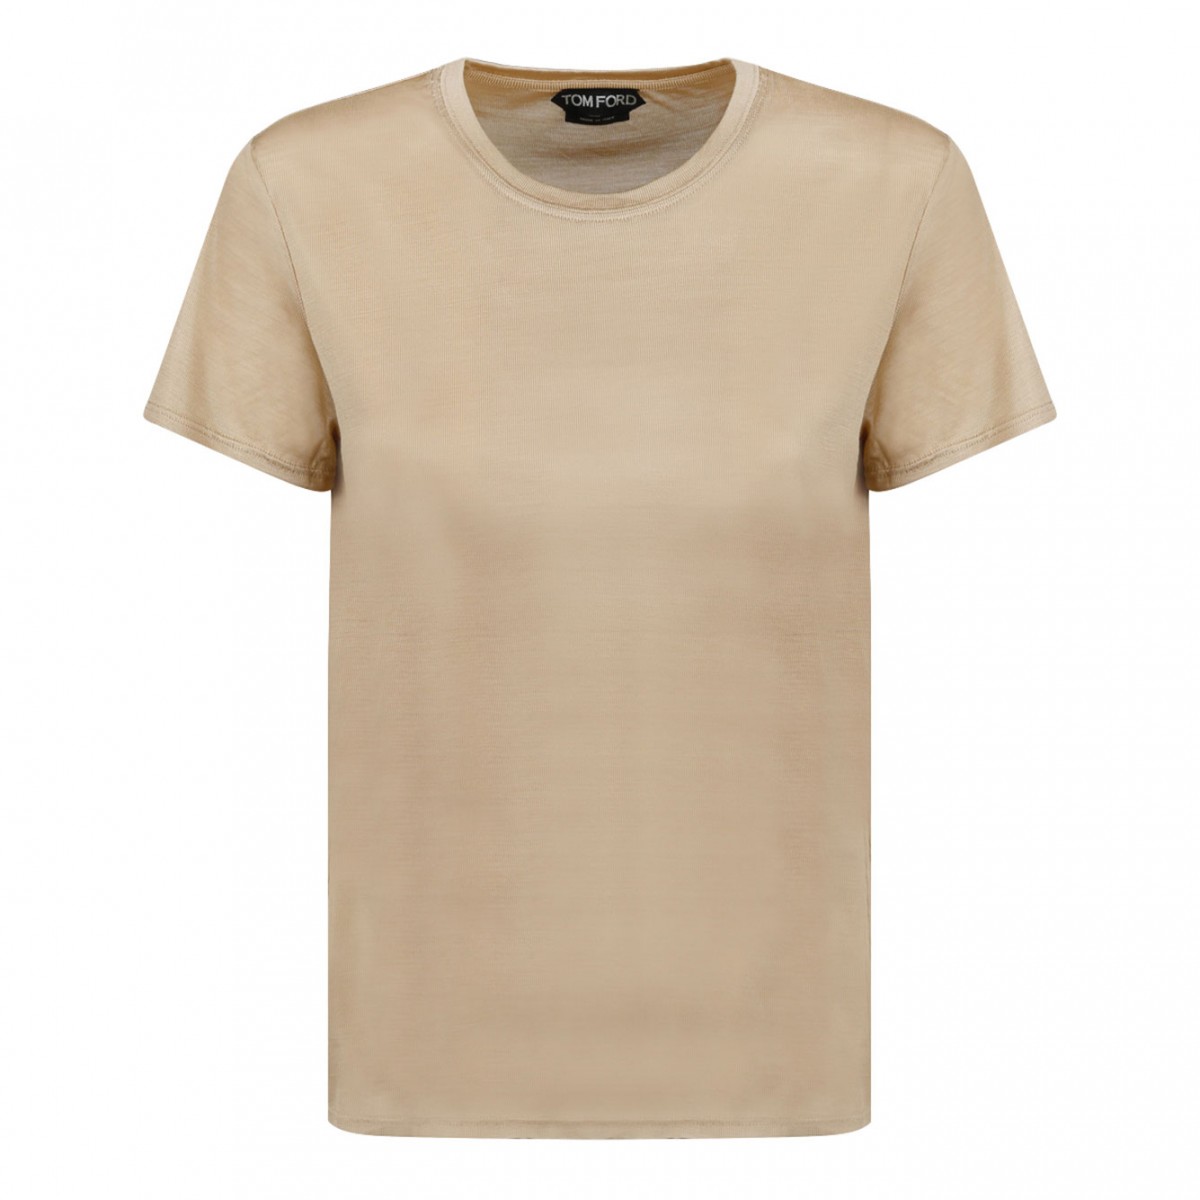 Golden Tan Crewneck T-Shirt